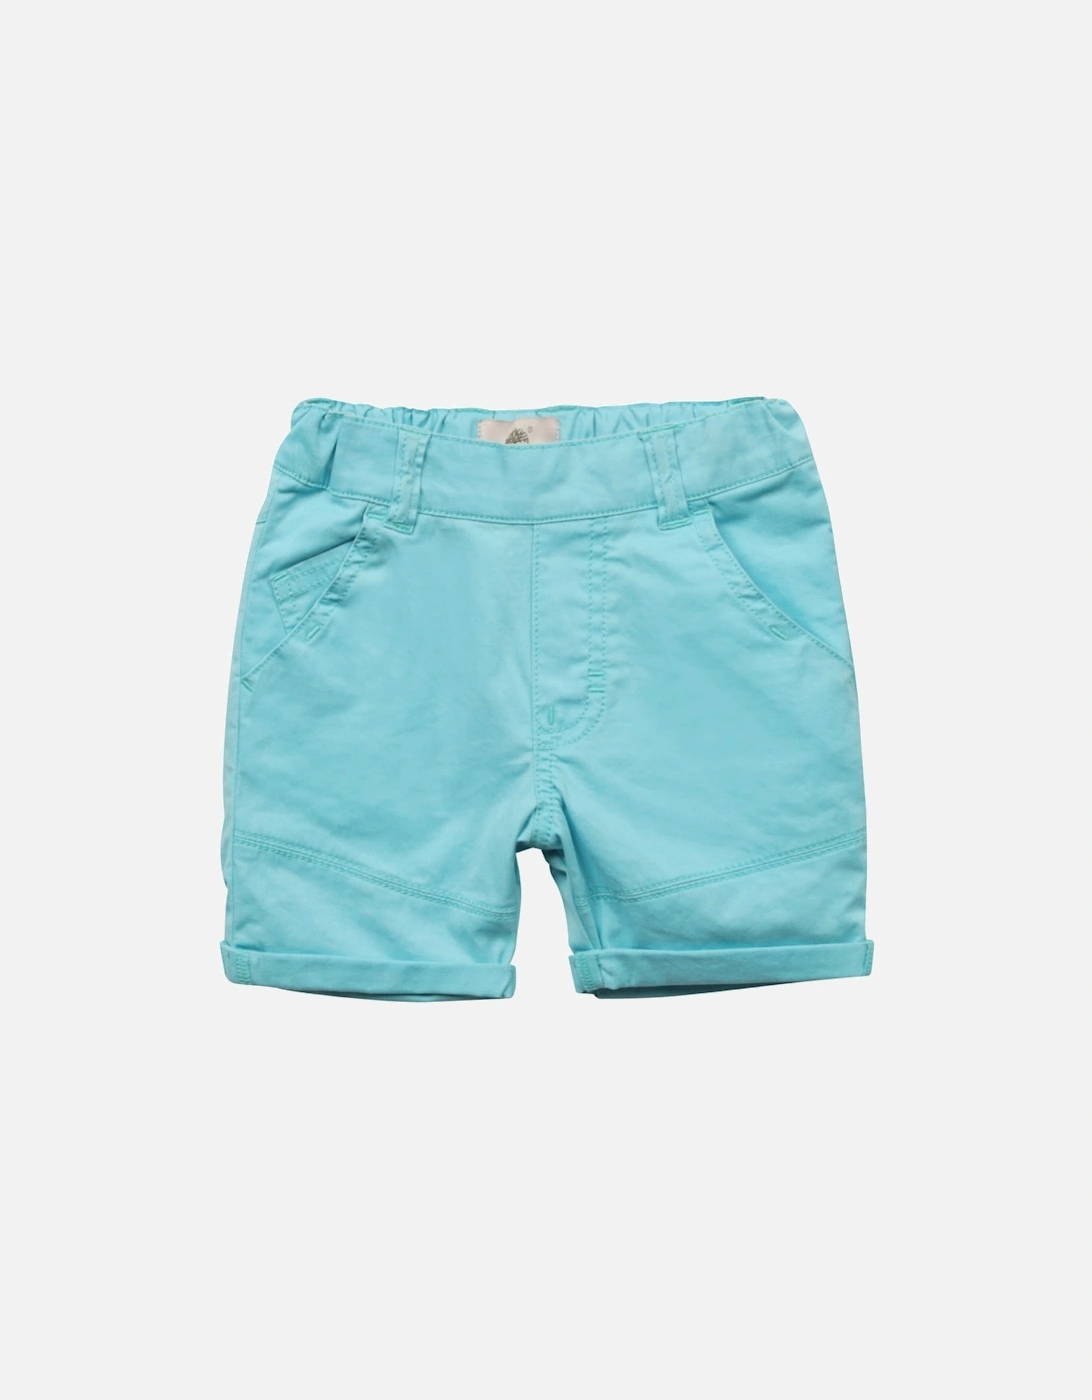 Aqua Shorts, 4 of 3